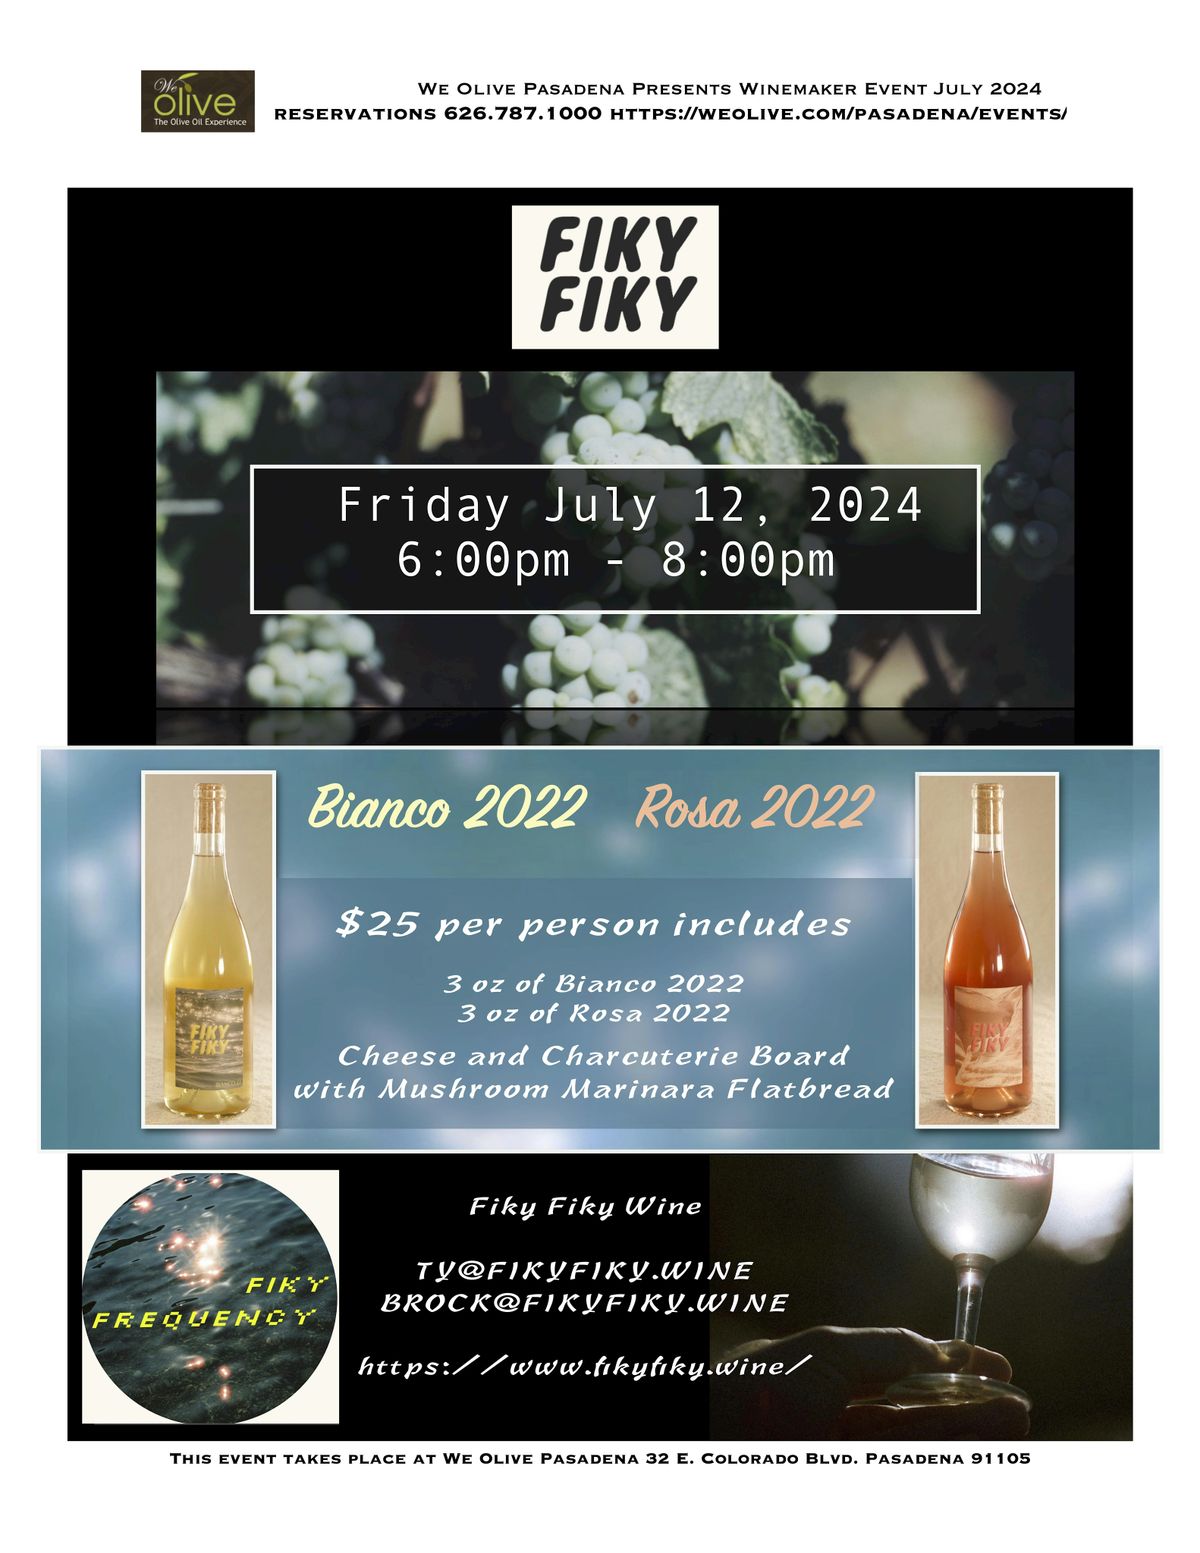 Meet the Winemaker - Fiky Fiky!